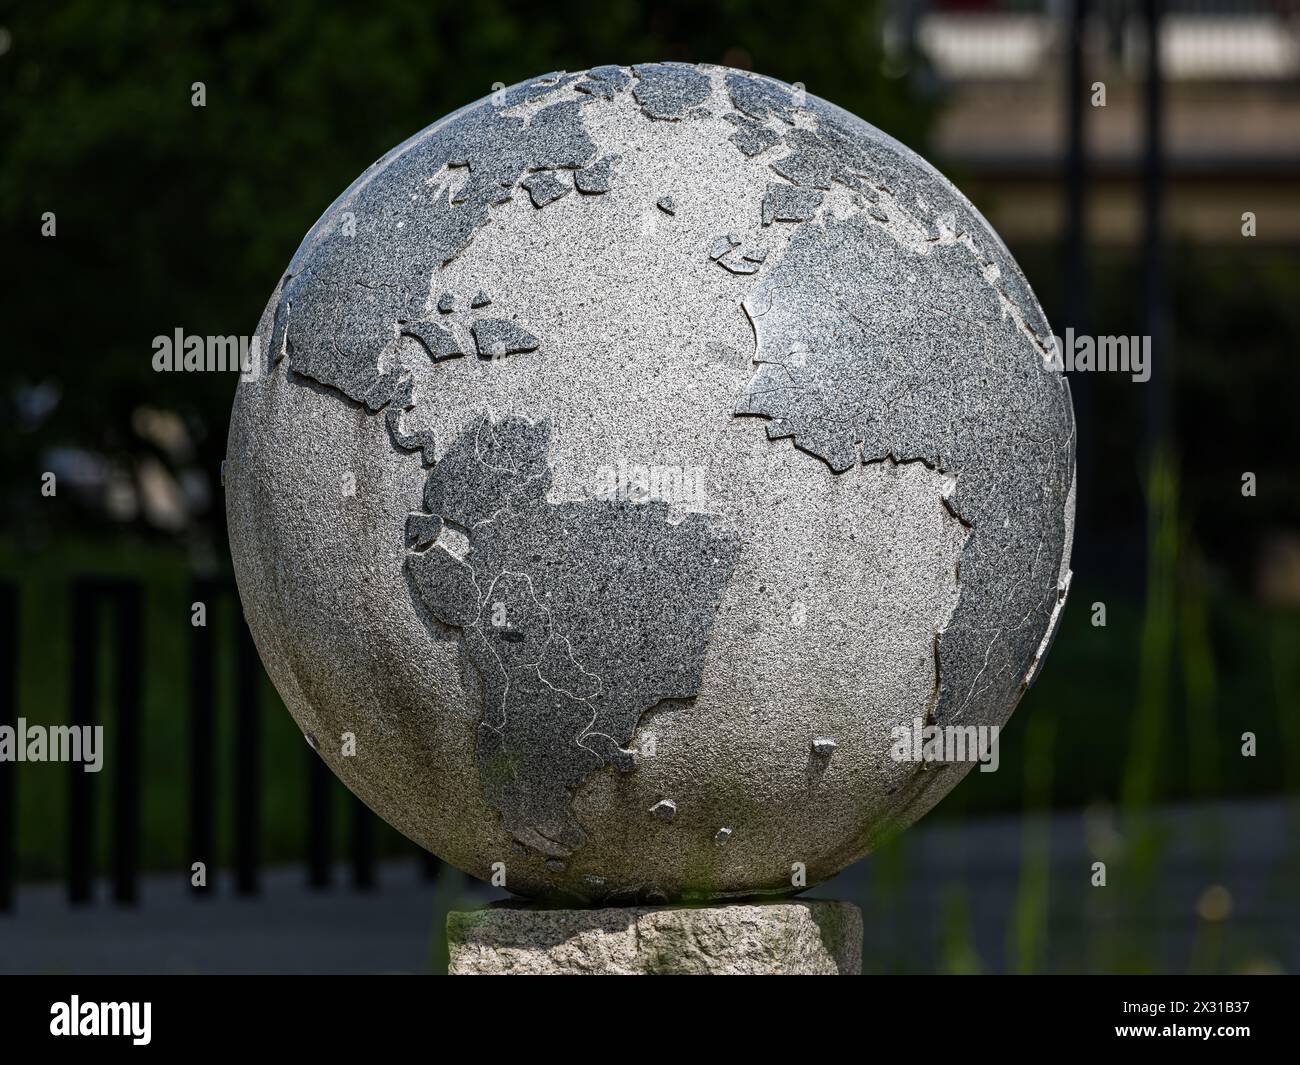 Blick auf eine aus Stein gefertigte Weltkugel. Zu sehen sind die Kontinente Süd- und Nordamerika, Afrika und Europa. (Zoug, Schweiz, 01.05.2022) Banque D'Images